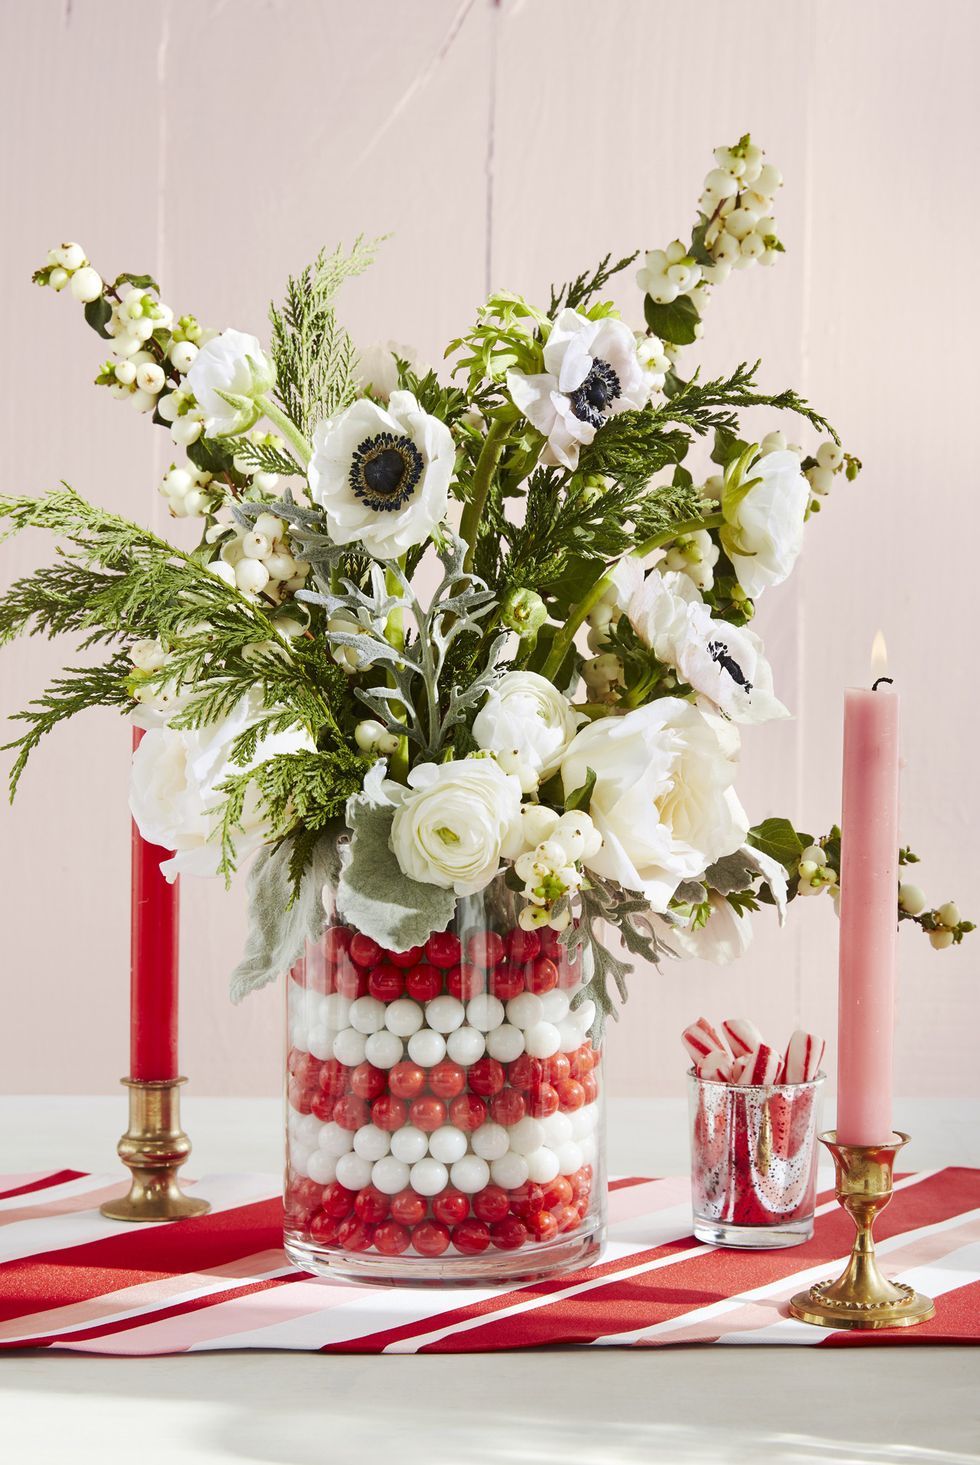 Một lọ hoa cỡ lớn bắt mắt cũng góp phần tạo dấu ấn cho bàn ăn. Hãy dùng những viên bi trắng, đỏ, lấp đầy chiếc lọ thủy tinh và cắm hoa theo ý thích nhé!